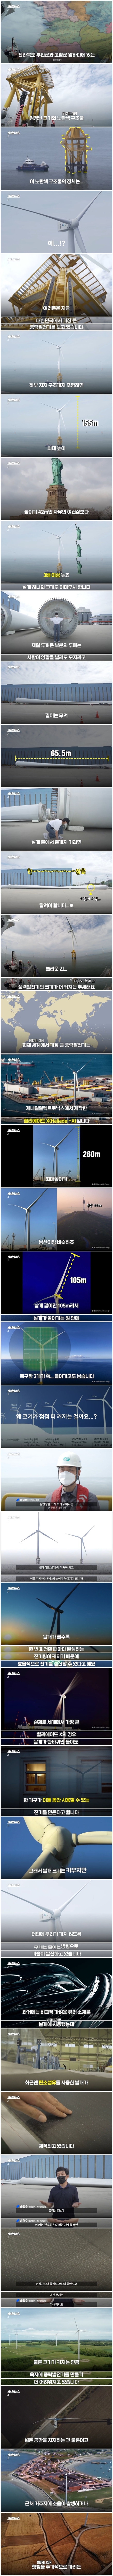 한국에서 만든 초대형 풍력발전기